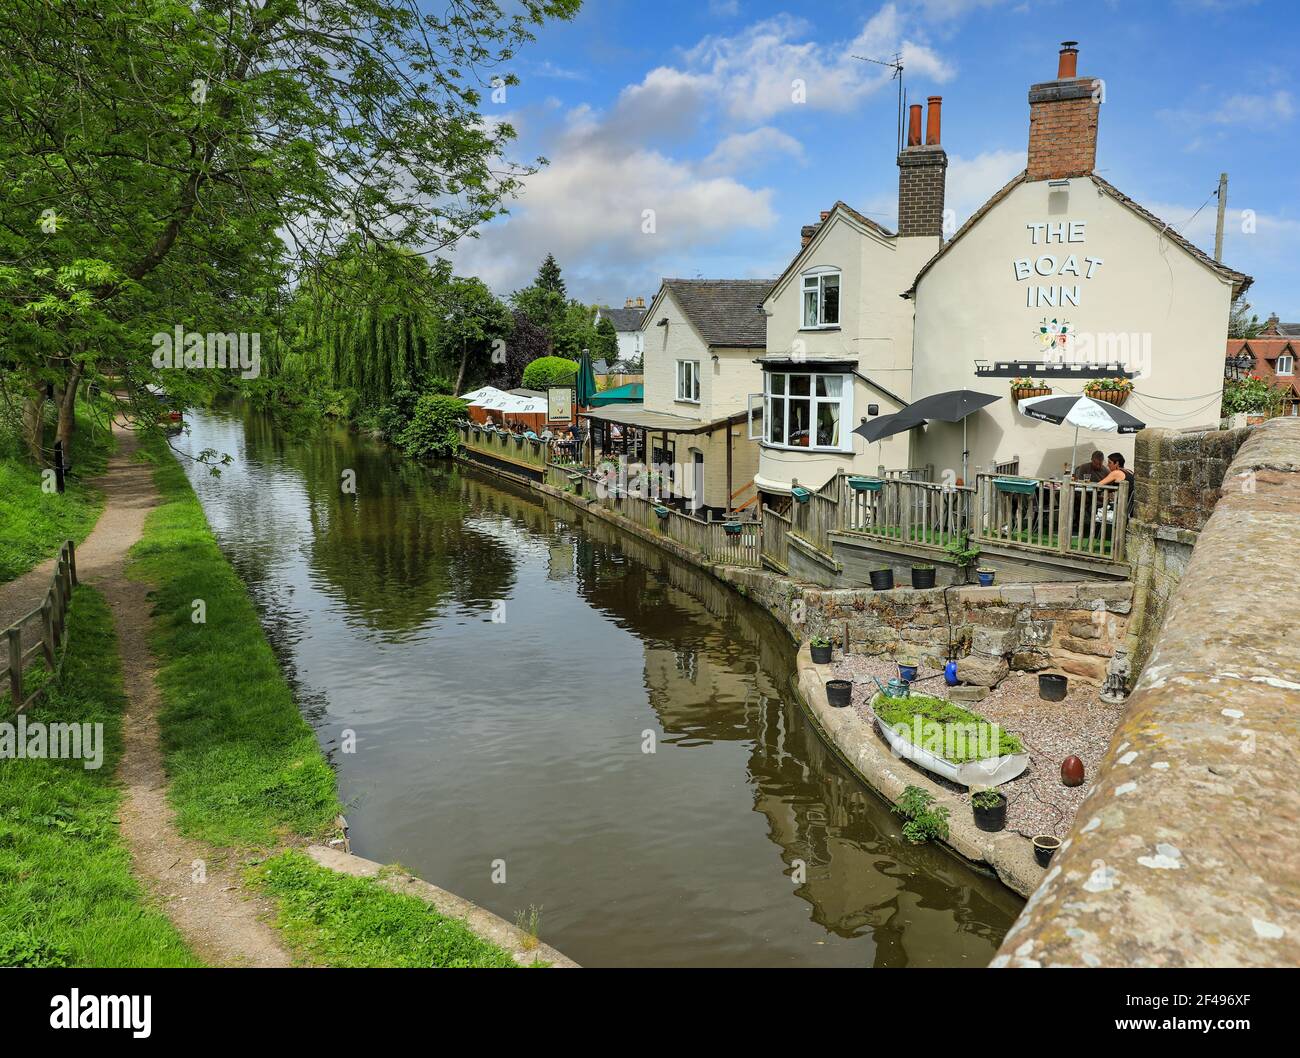 The Boat Inn ou pub ou maison publique, à côté du canal Shropshire Union, Gnosall, Staffordshire, Angleterre, Royaume-Uni Banque D'Images